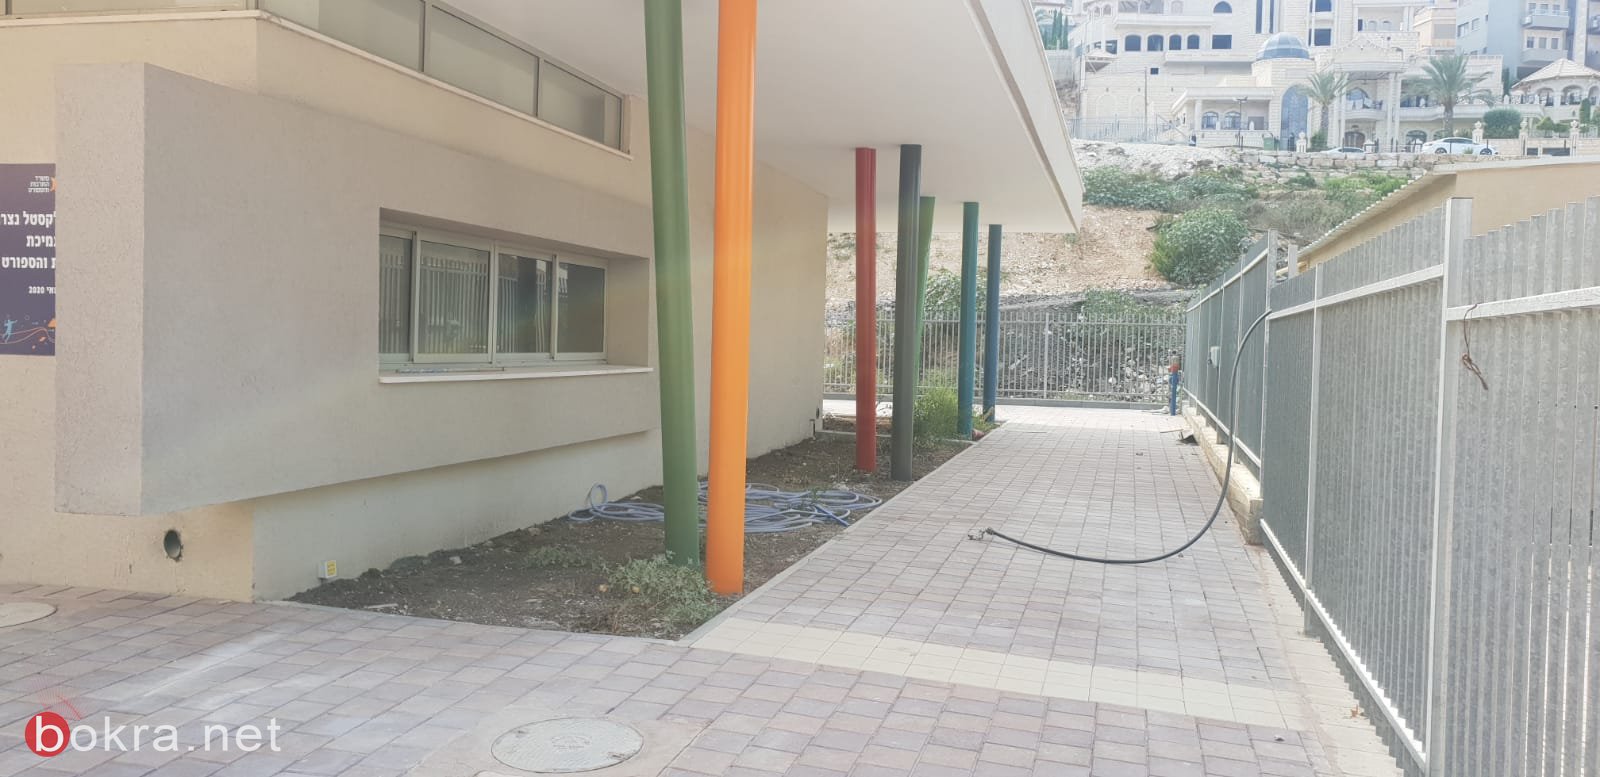 بلدية الناصرة: قاعة رياضية جديدة في حي بلال-11